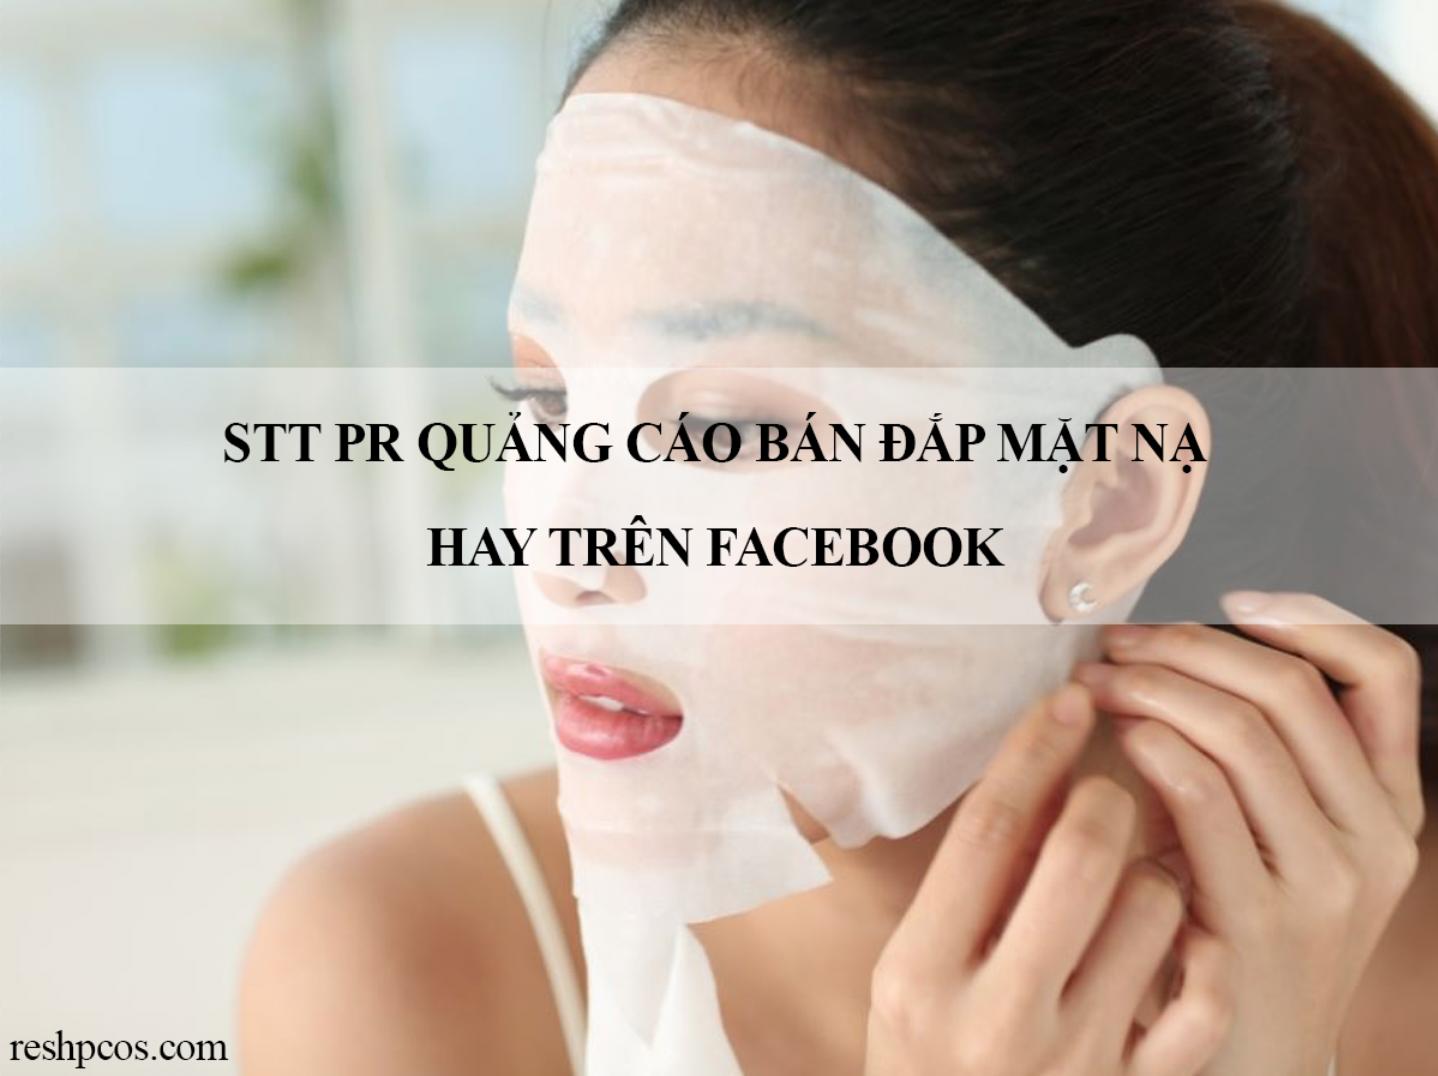 STT PR quảng cáo bán đắp mặt nạ hay trên Facebook – iT60s.org